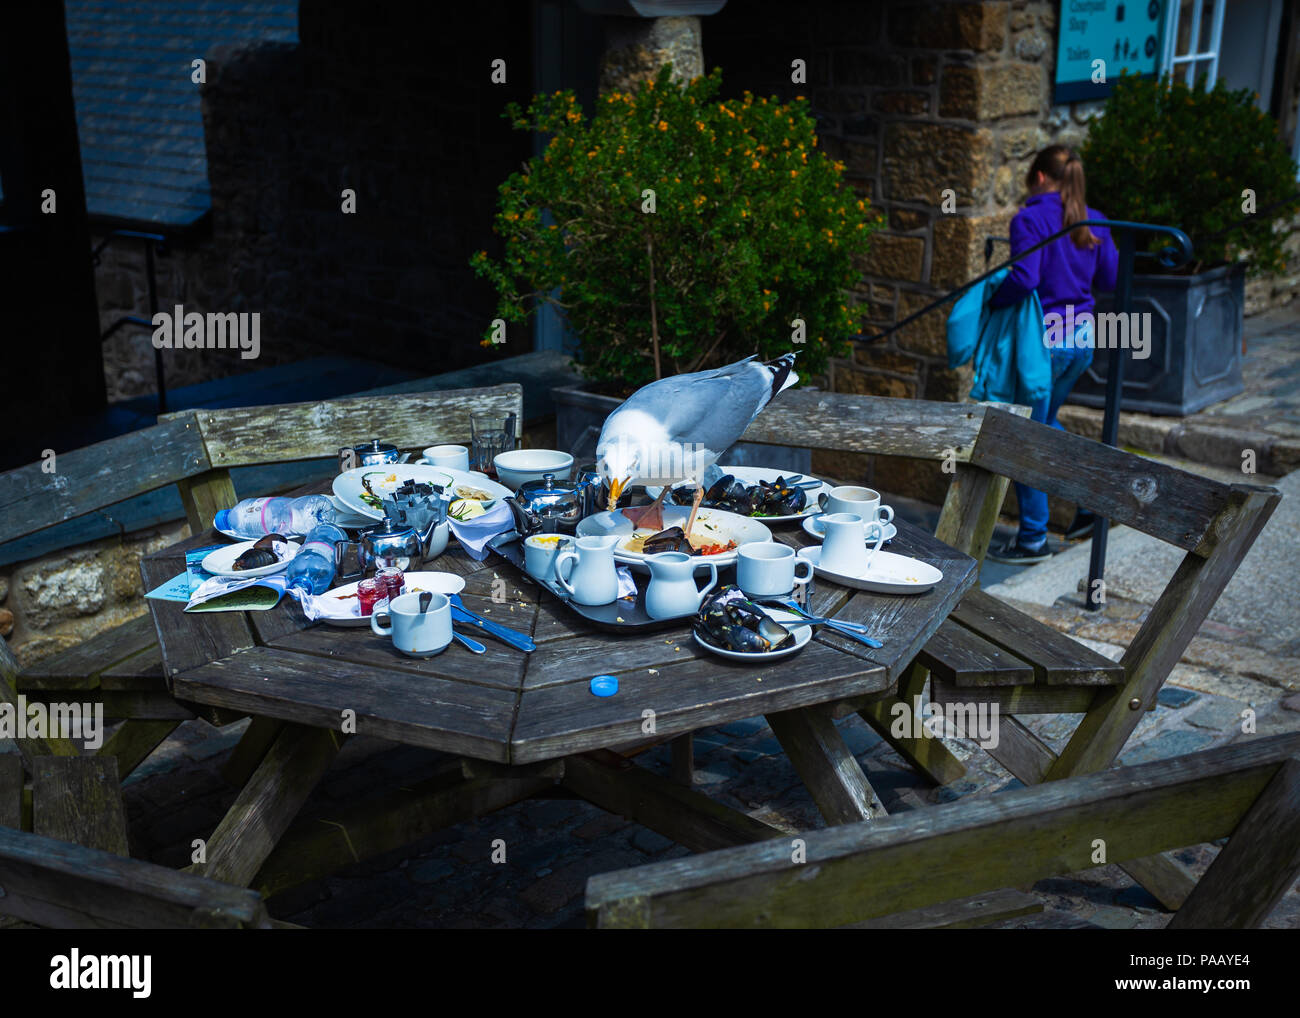 Silbermöwe reinigt bis Reste auf ein kornisches Tisch im Freien Stockfoto